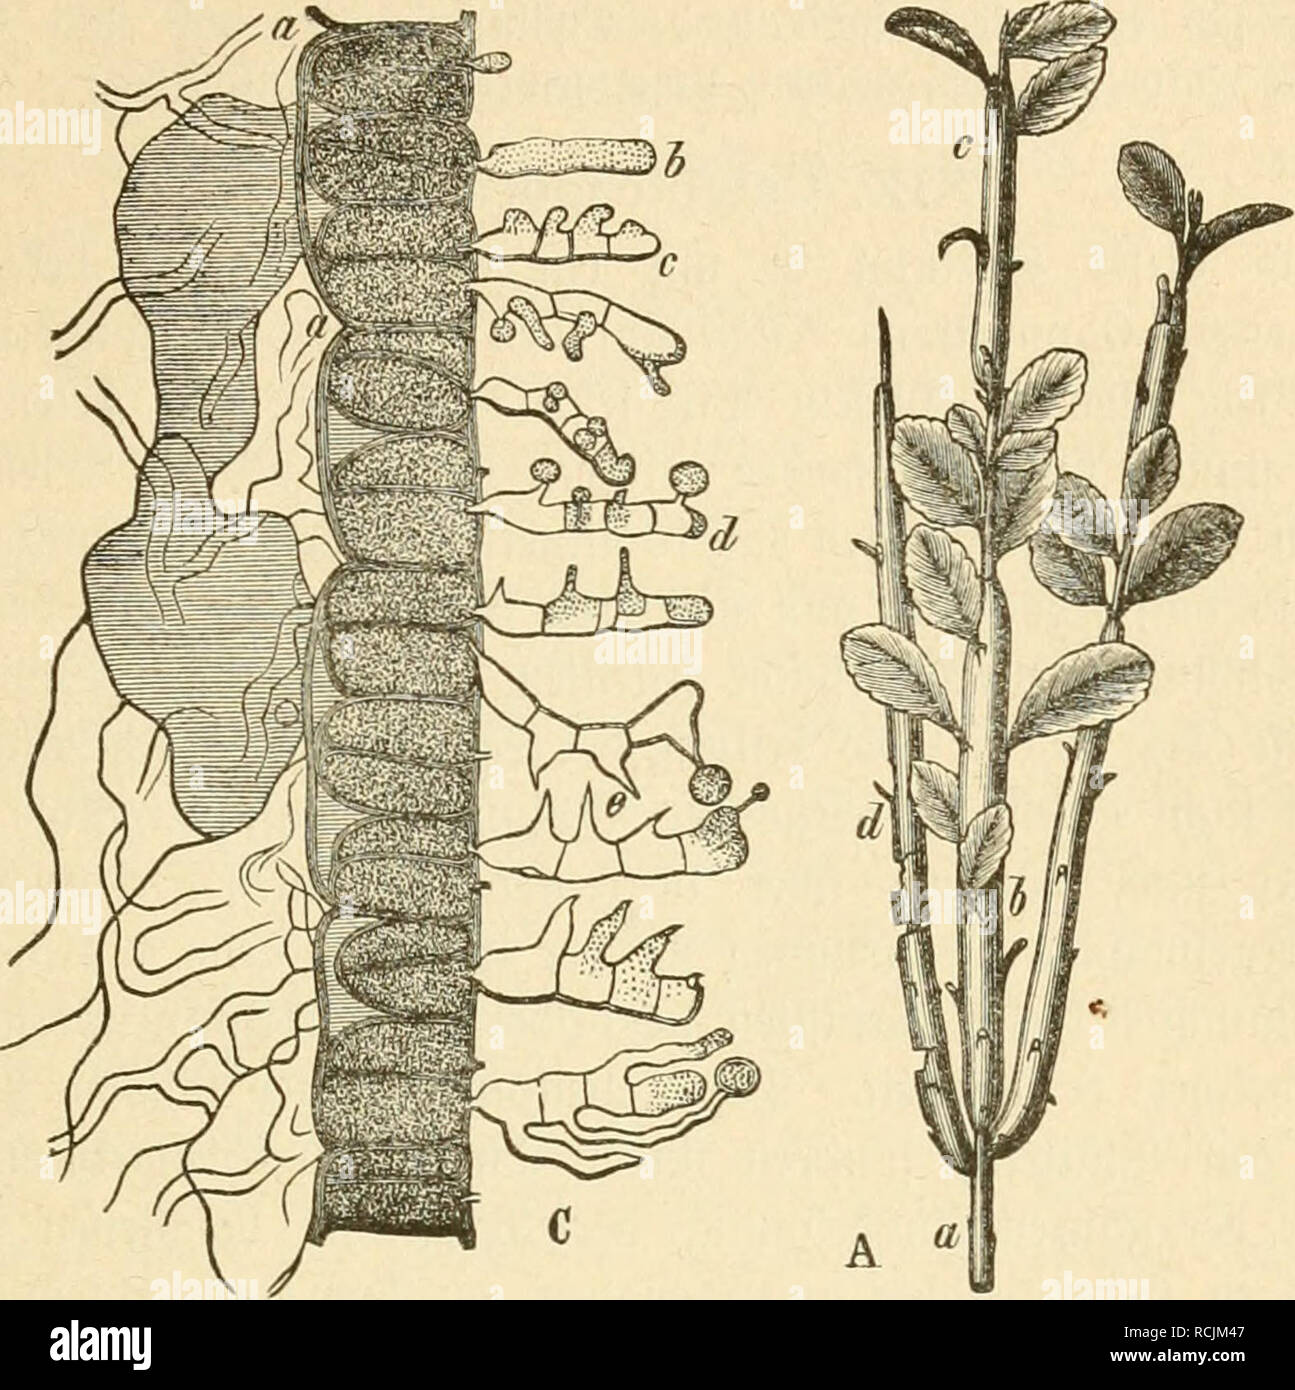 . Die krankheiten der pflanzen, ein handbuch fur land-und forstwirte, gartner, gartenfreunde und botaniker. Plant diseases. 8. tnpitel: ^oftpil^e (Uixbtiiacccn) alö Urfad)e bex 3f{oftfranf()citen 205 20. Melampsora sparsa IVinkr, auf bell Slattettl HDU Arctostaphylos Stuf Arctosta- alpina in ben fd)iDeijer SUpeii phyios. 21. Melampsora Pirolae Sc/iröf., a beit 53ltittern ber Pirola- Sluf Pirola. Slvtt'ii, ind[t im Ürebüjuftanb (Uredo Pirolae Mart.).. mo- 39. Calyptospora Göppertiana. A. eine ^flanje ÜDU Vaccimum Vitis idaea; b, c. bie bie§iäi)rioeii, unter beut (£inf(nf3 bes ^ßaraftteu bicf Stock Photo